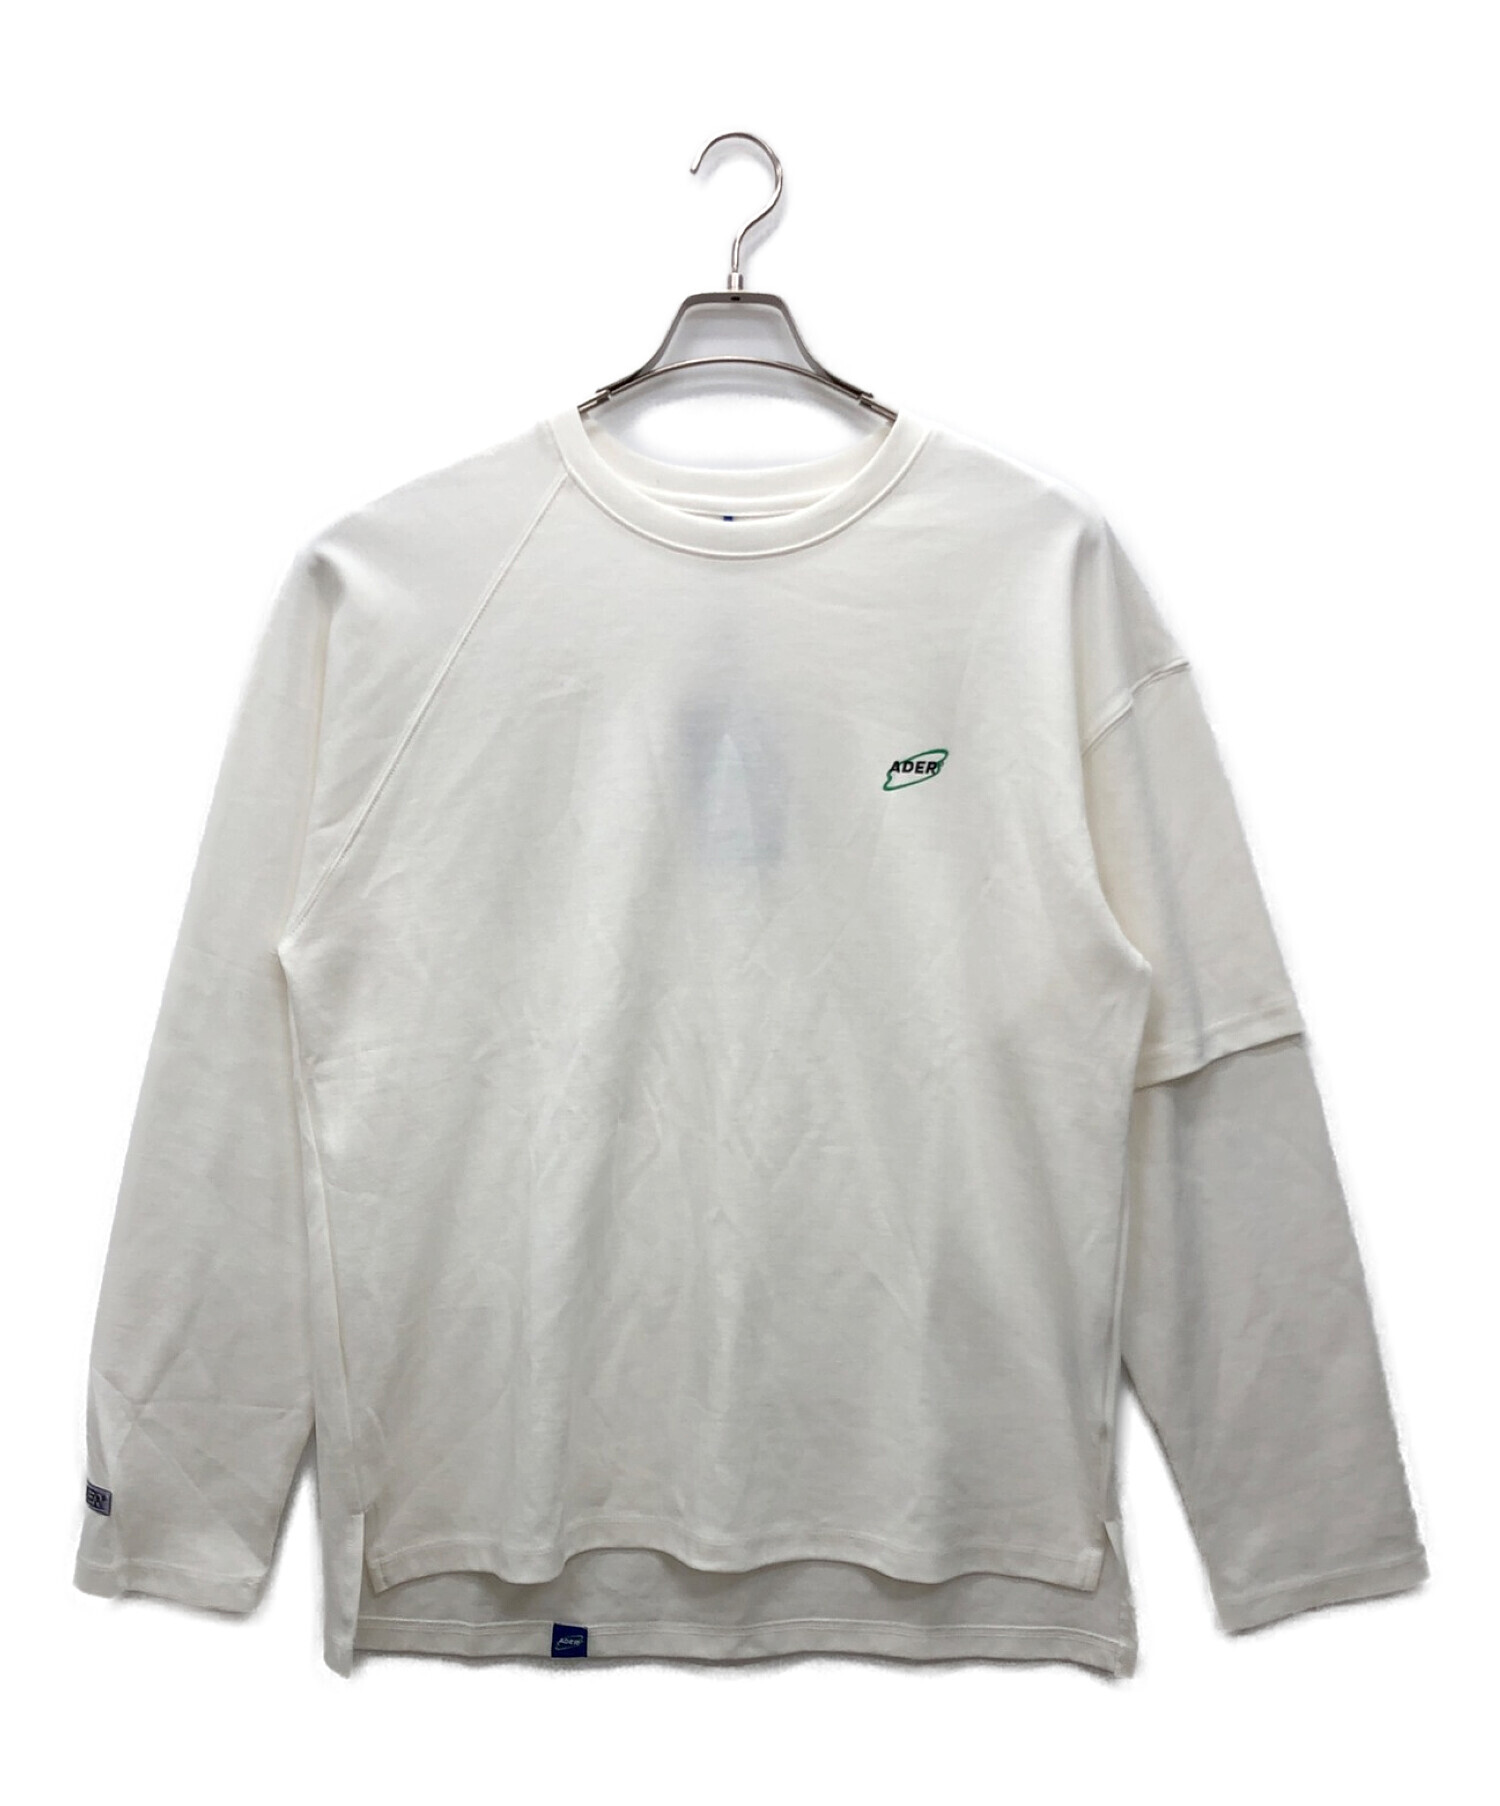 ADER error (アーダーエラー) ロングスリーブTシャツ ホワイト サイズ:3 未使用品